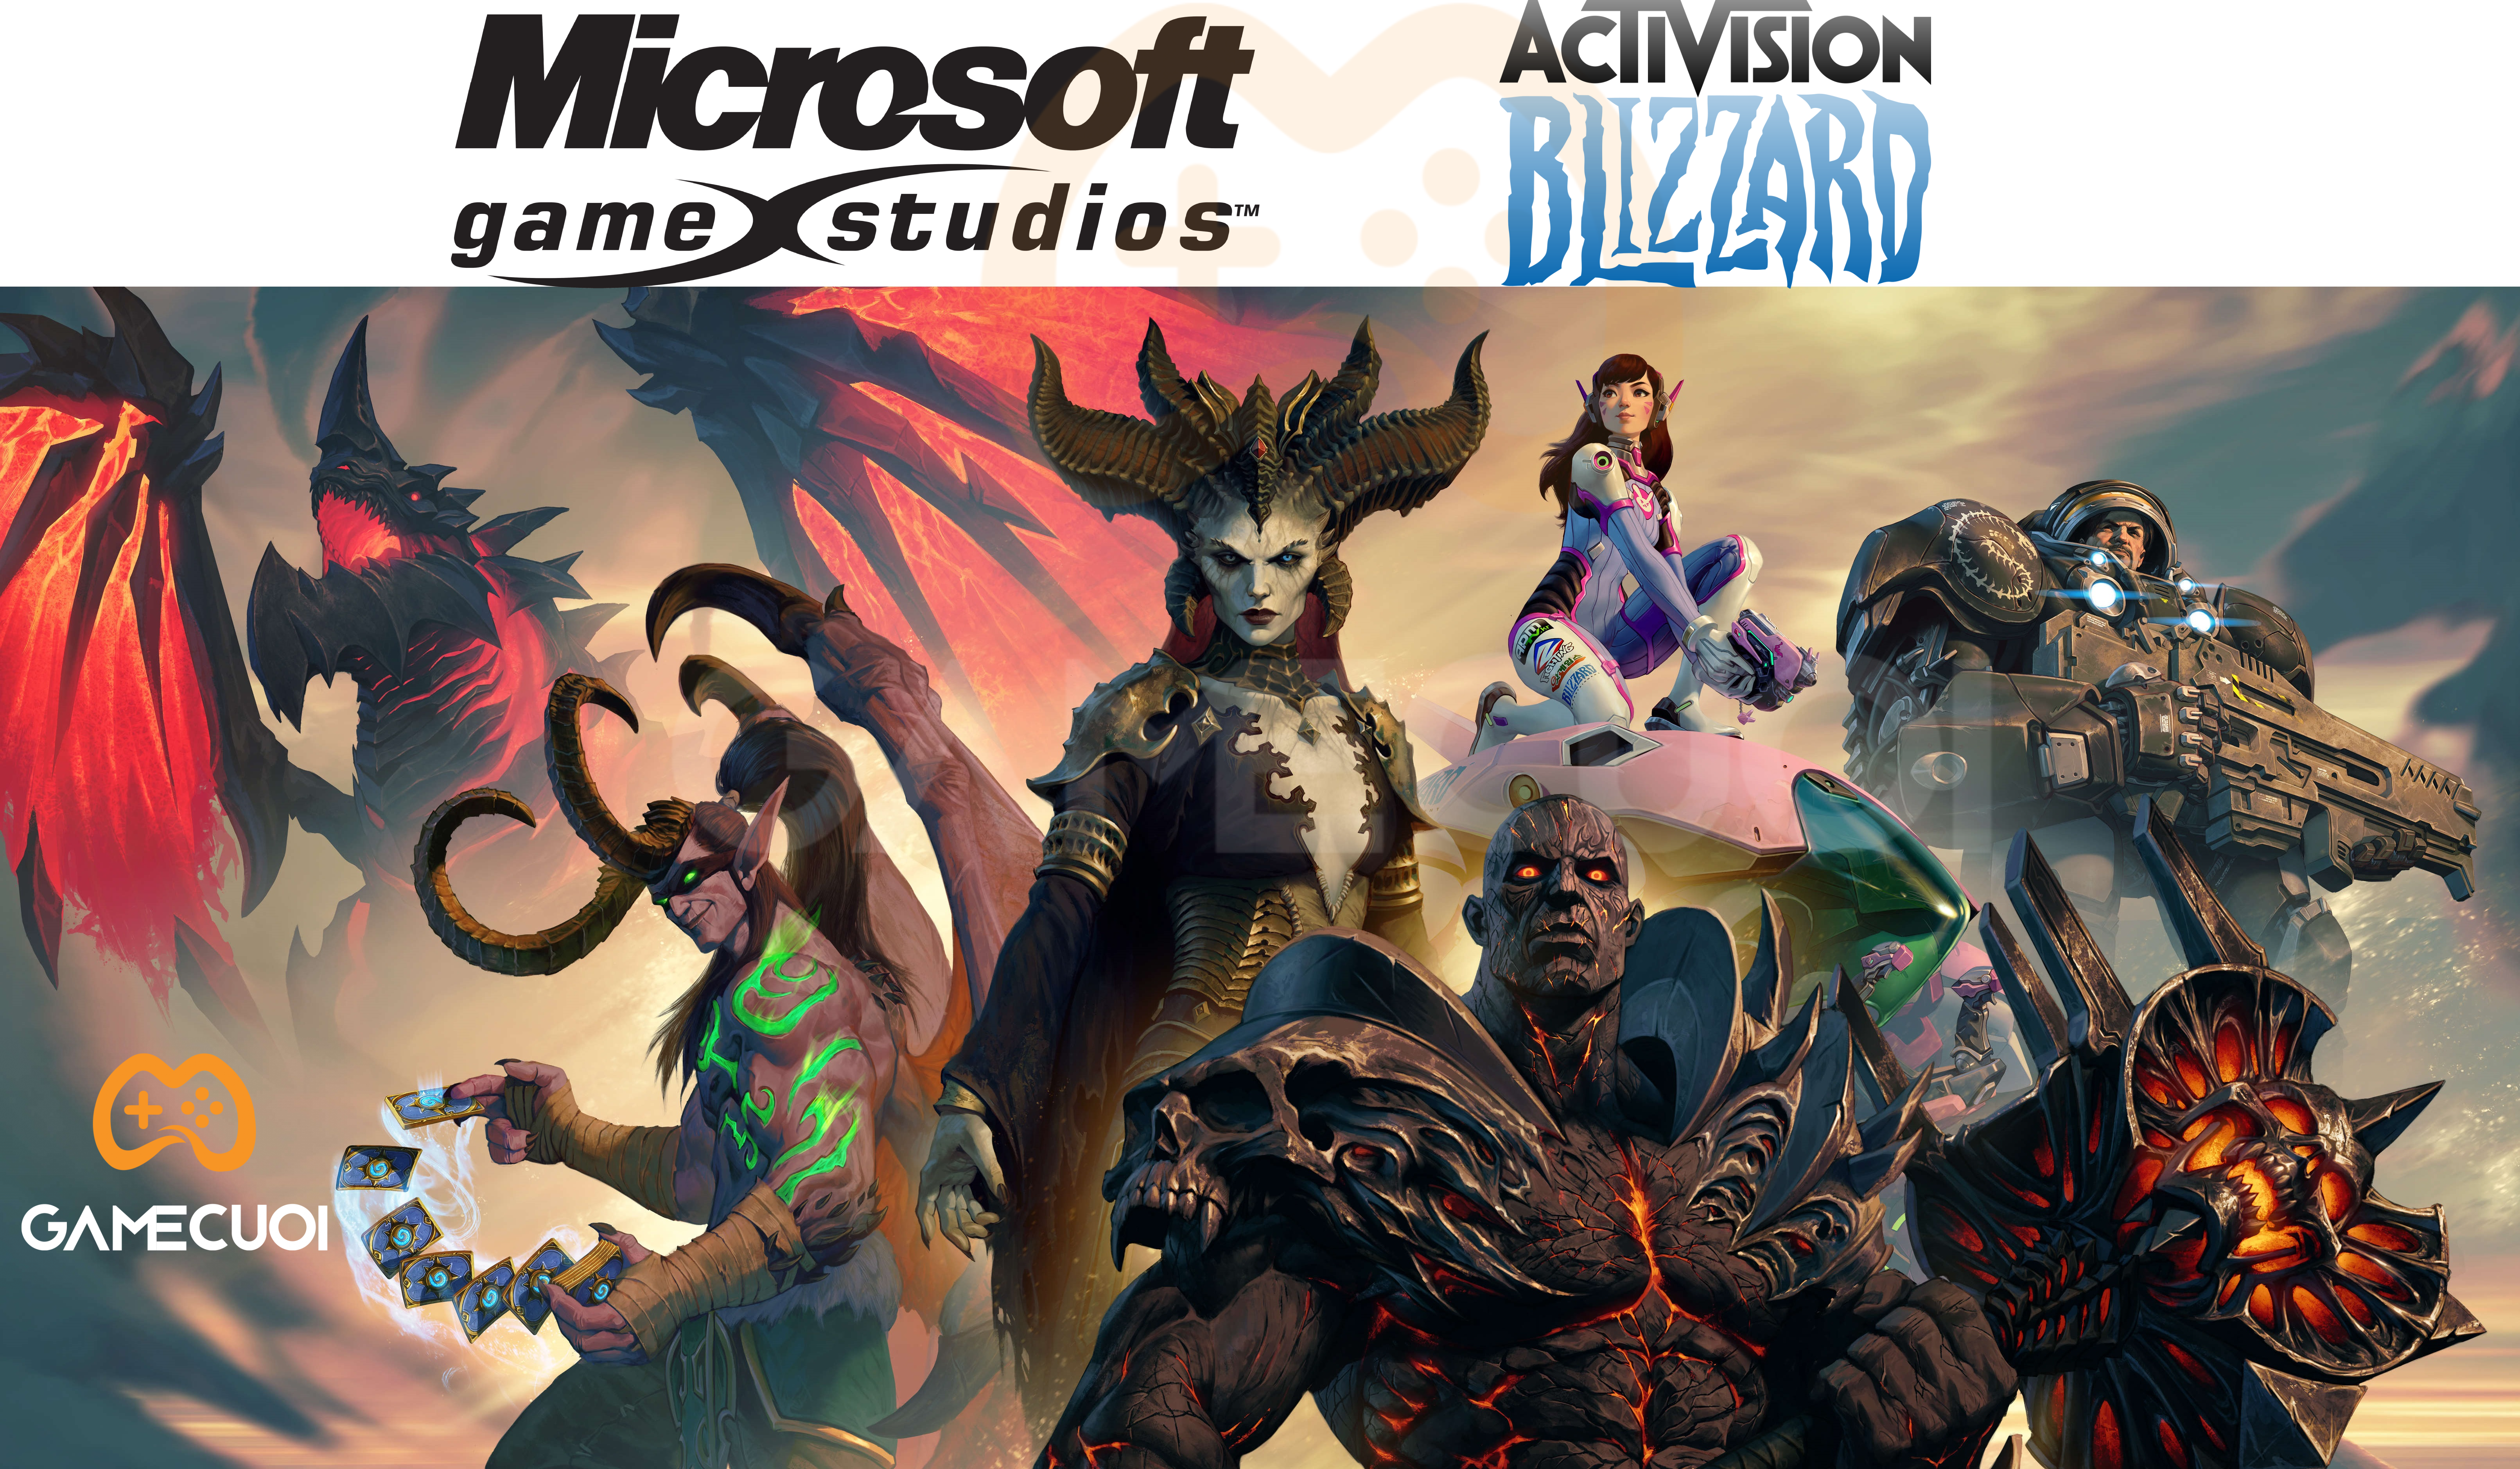 Điểm danh đội hình studio game cực hoành tráng mà Microsoft hiện đang sở hữu